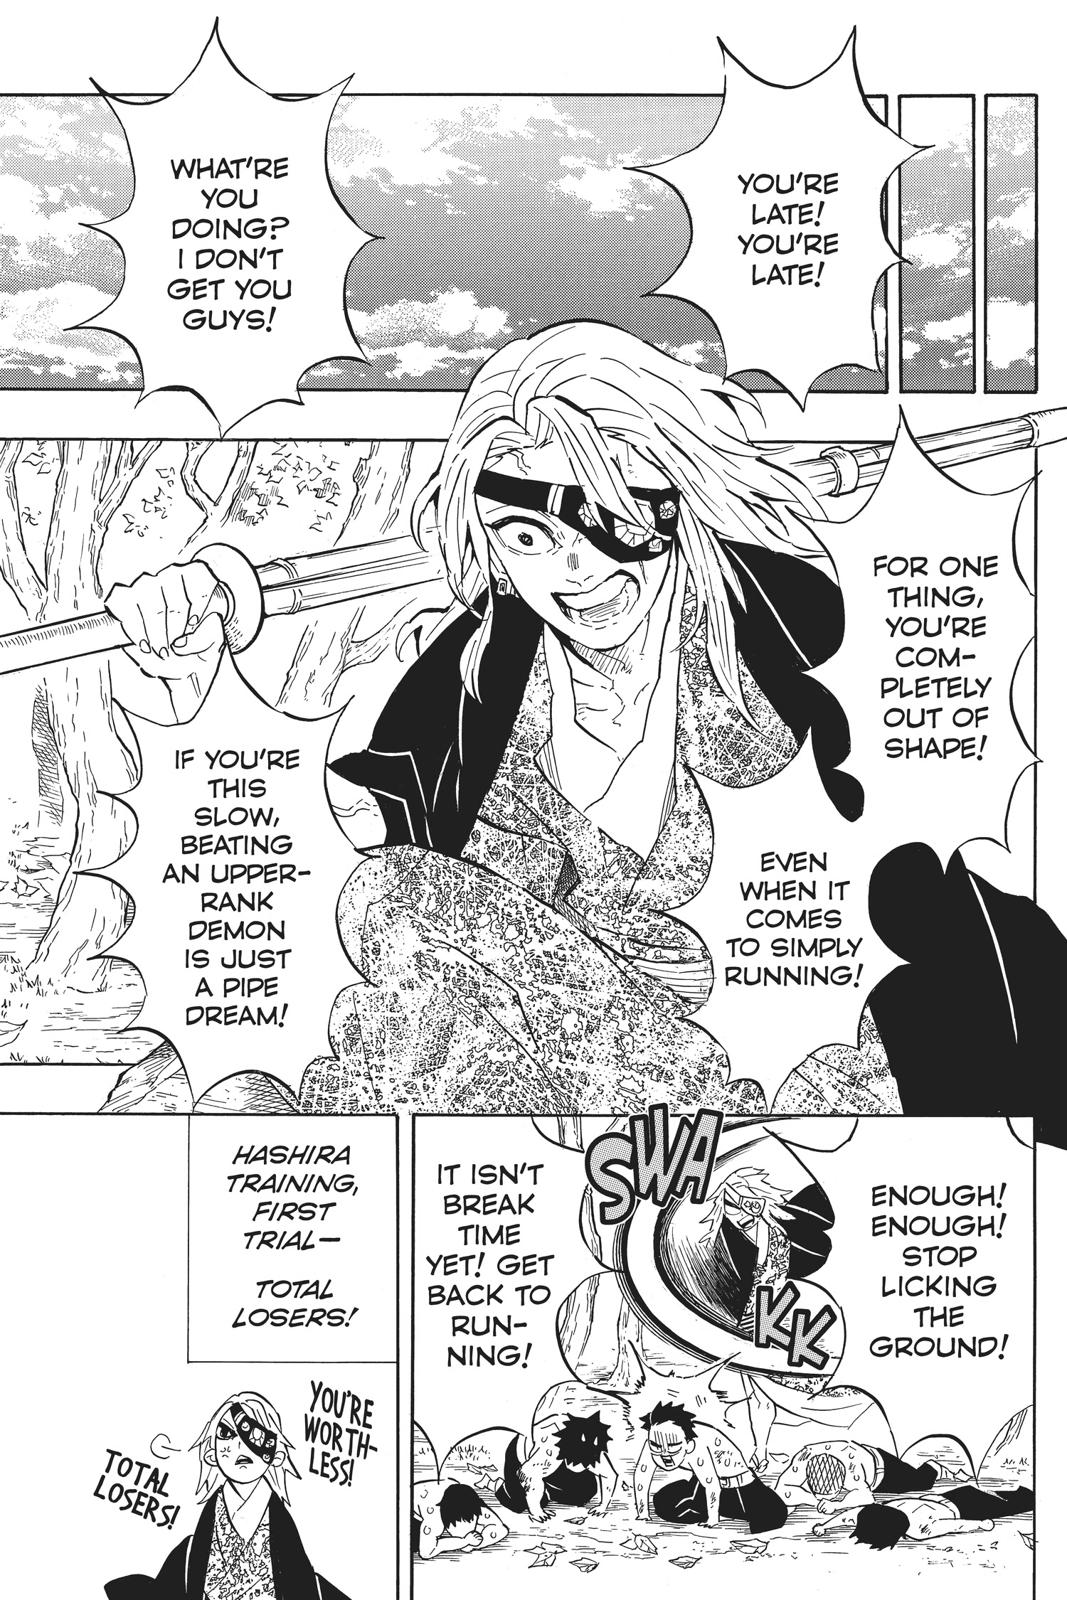 Demon Slayer Manga Manga Chapter - 130 - image 6